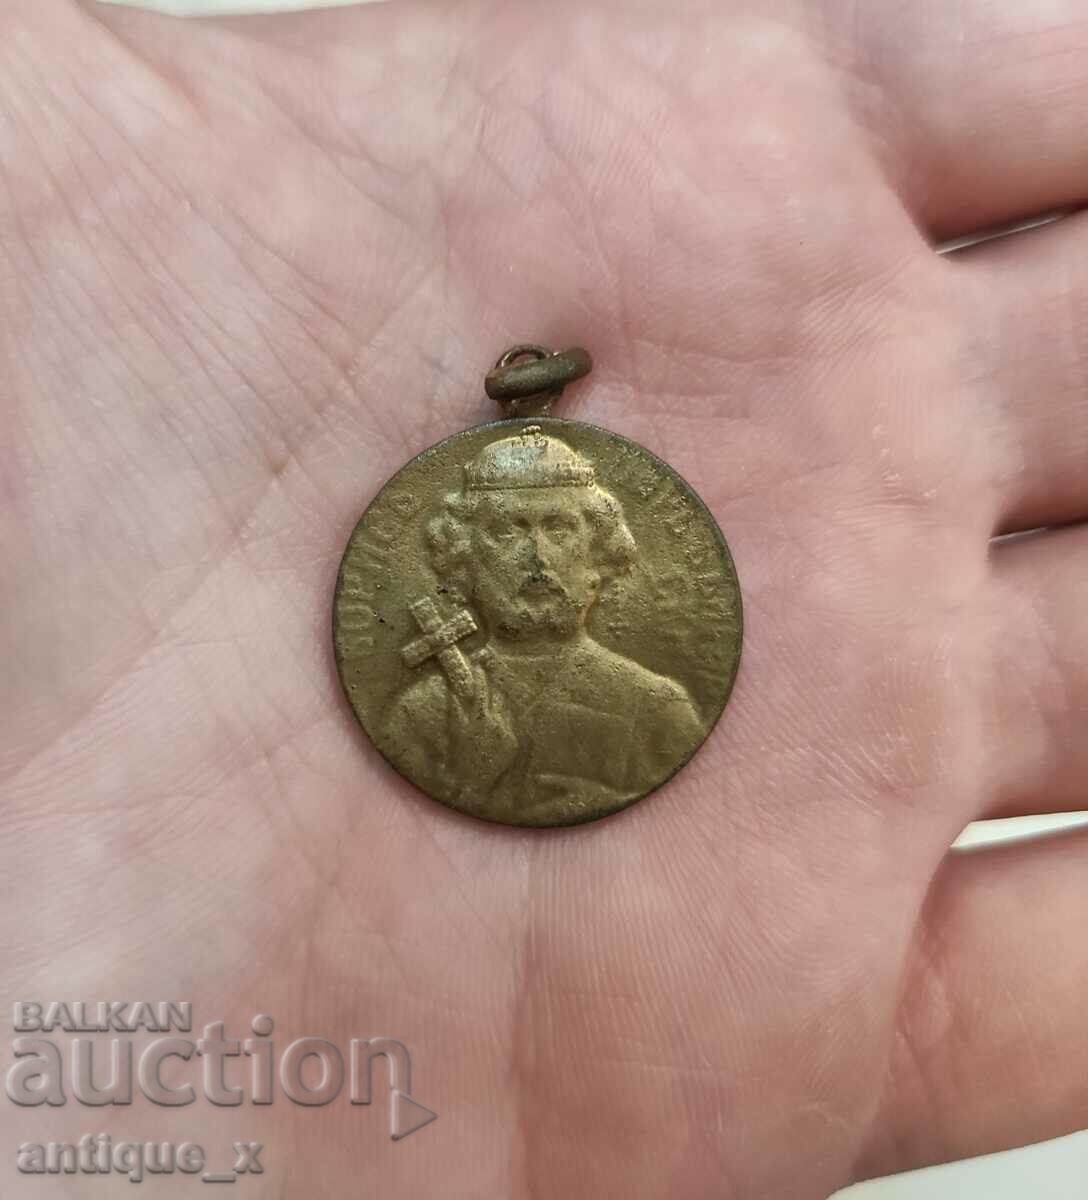 Български княжески медал-цар Борис I-високо качество!-1907 г